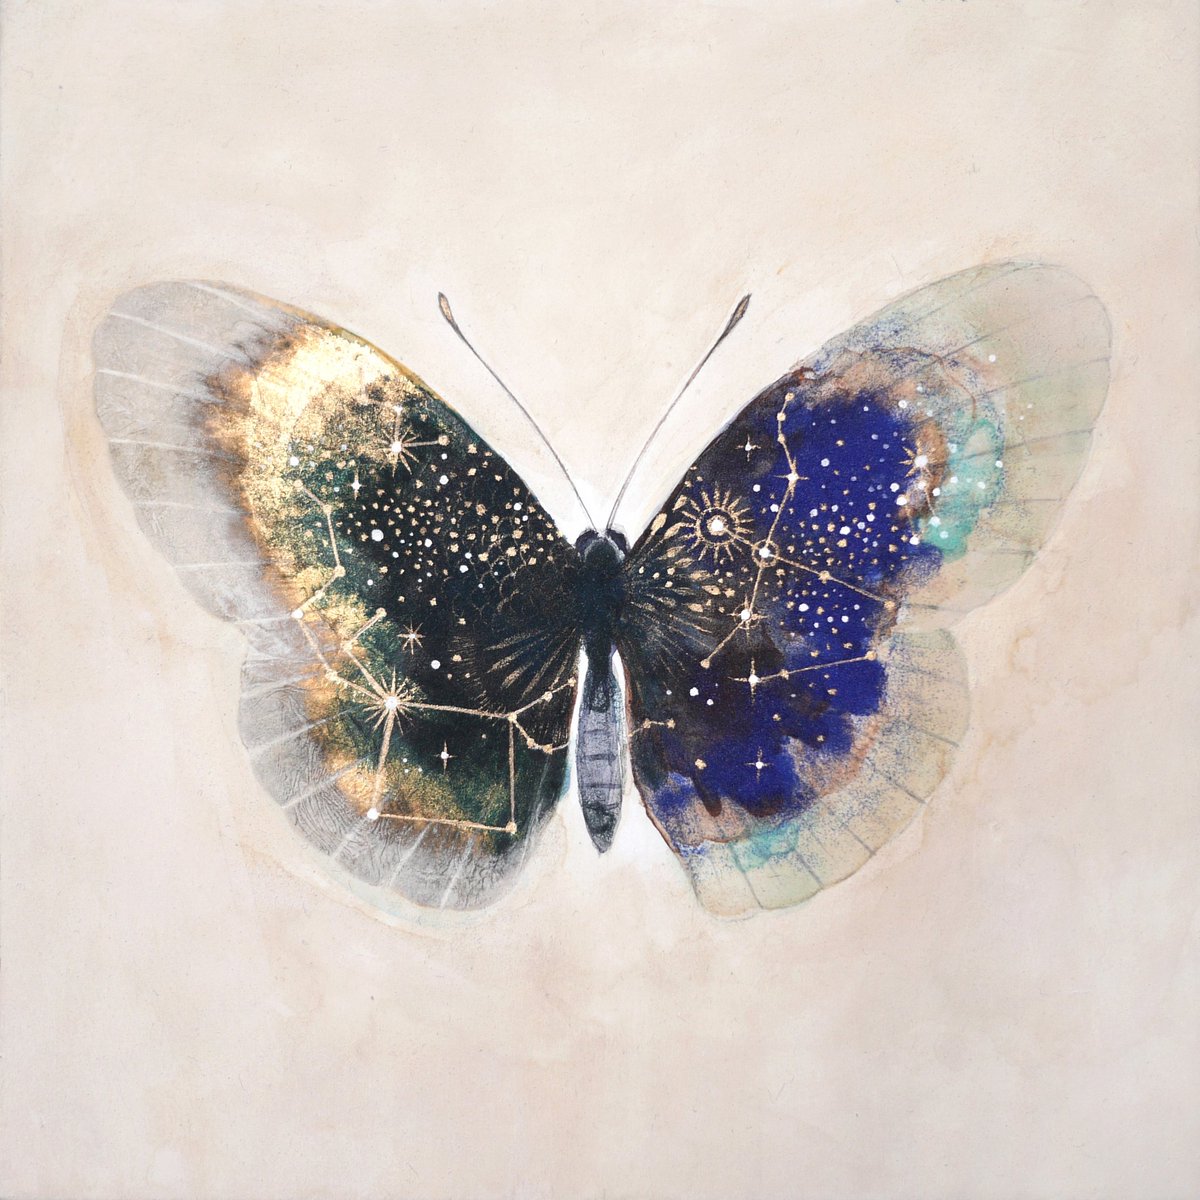 「蝶の絵は蝶自体を描きたいわけでは無く、蝶を通して魂や宇宙を表現したいと思っていま」|車谷 典子のイラスト